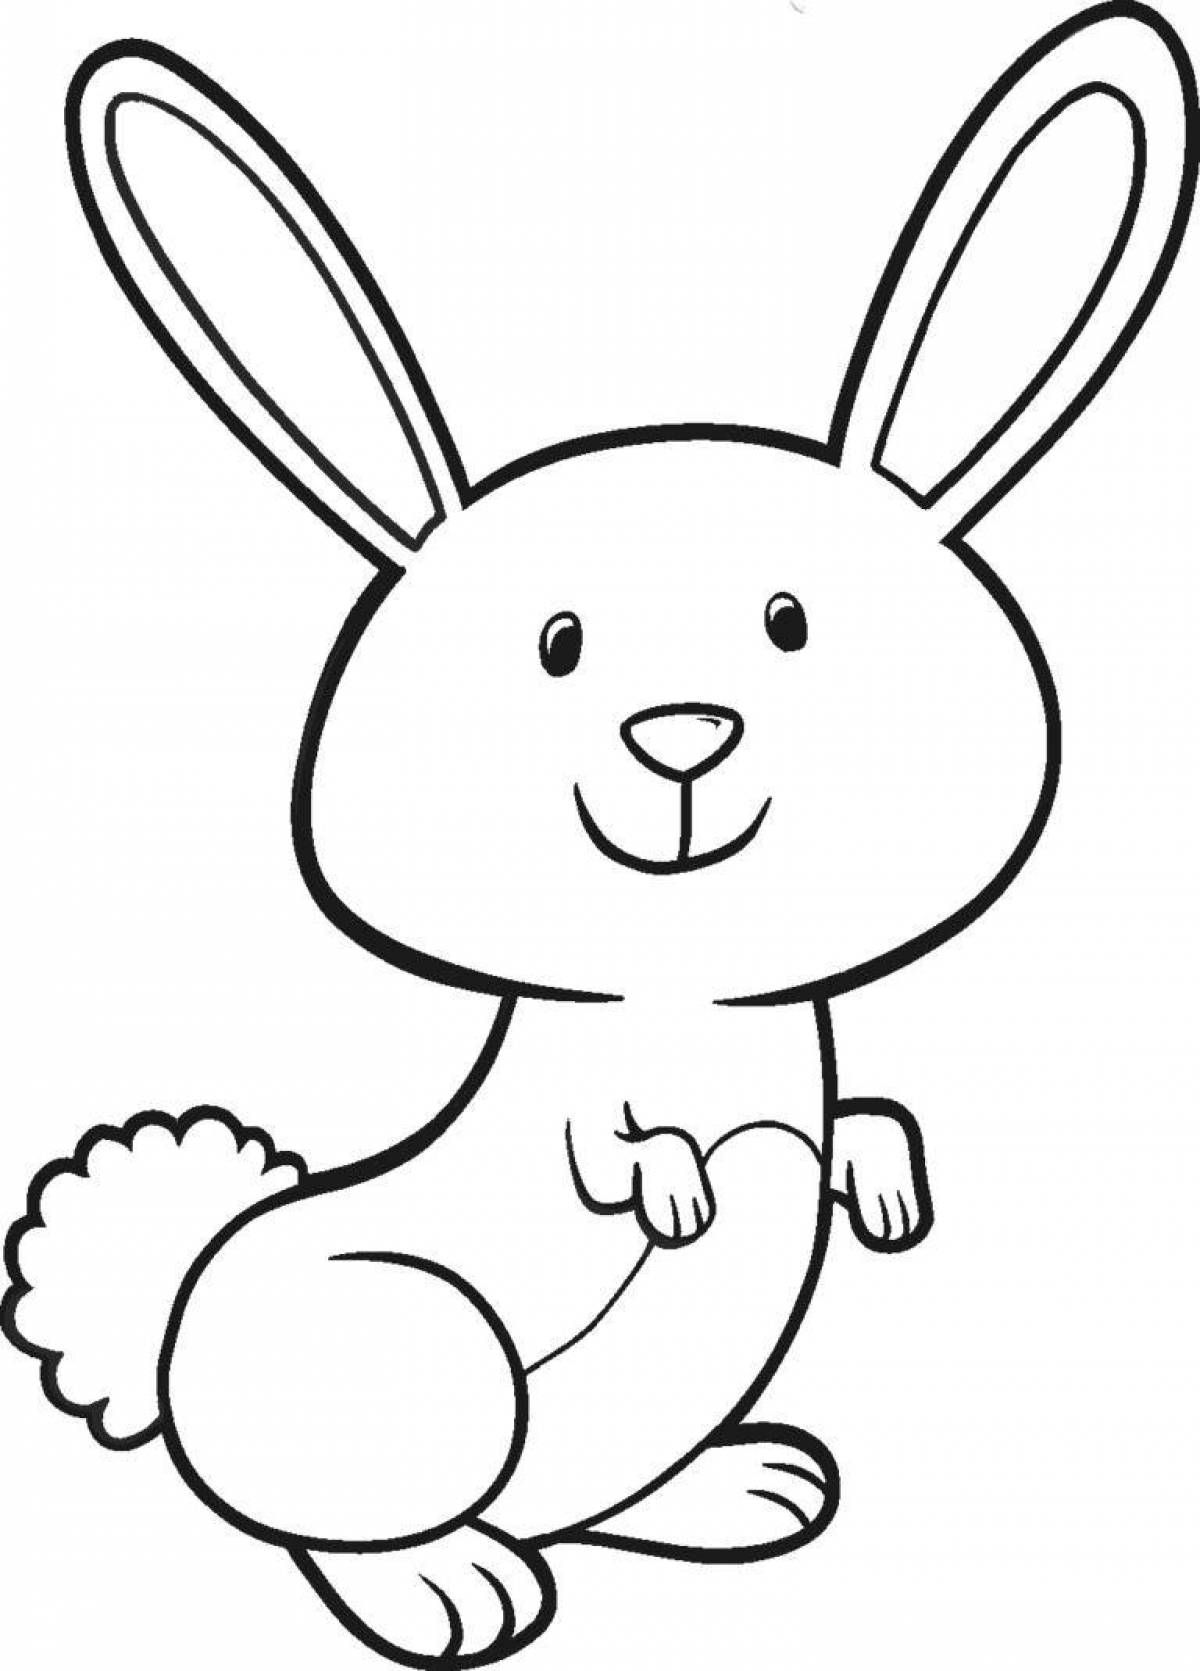 Забавная раскраска кролика для детей